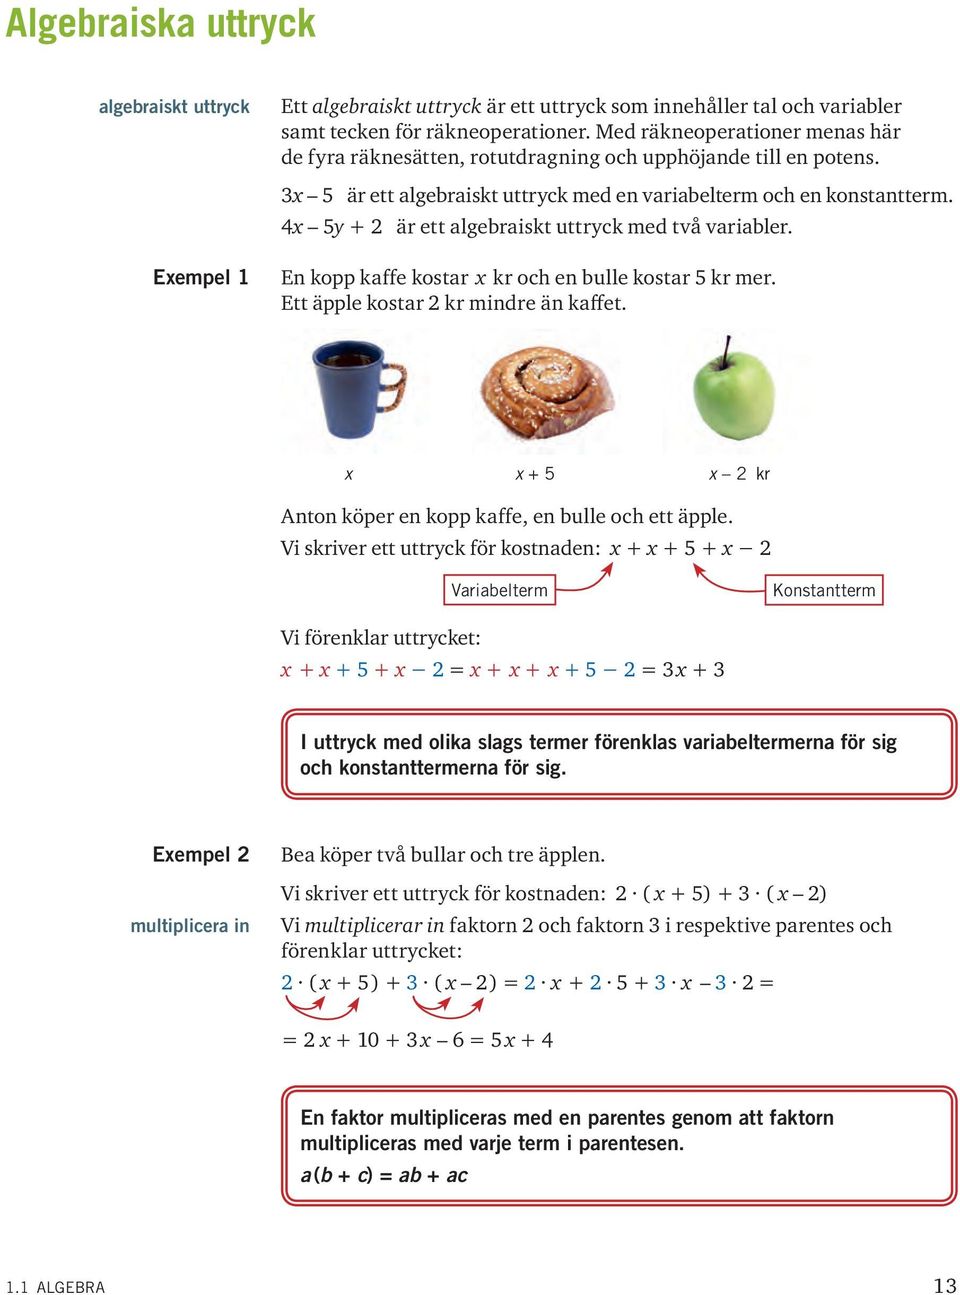 4 5 + 2 är ett algebraiskt uttrck med två variabler. En kopp kaffe kostar kr och en bulle kostar 5 kr mer. Ett äpple kostar 2 kr mindre än kaffet.